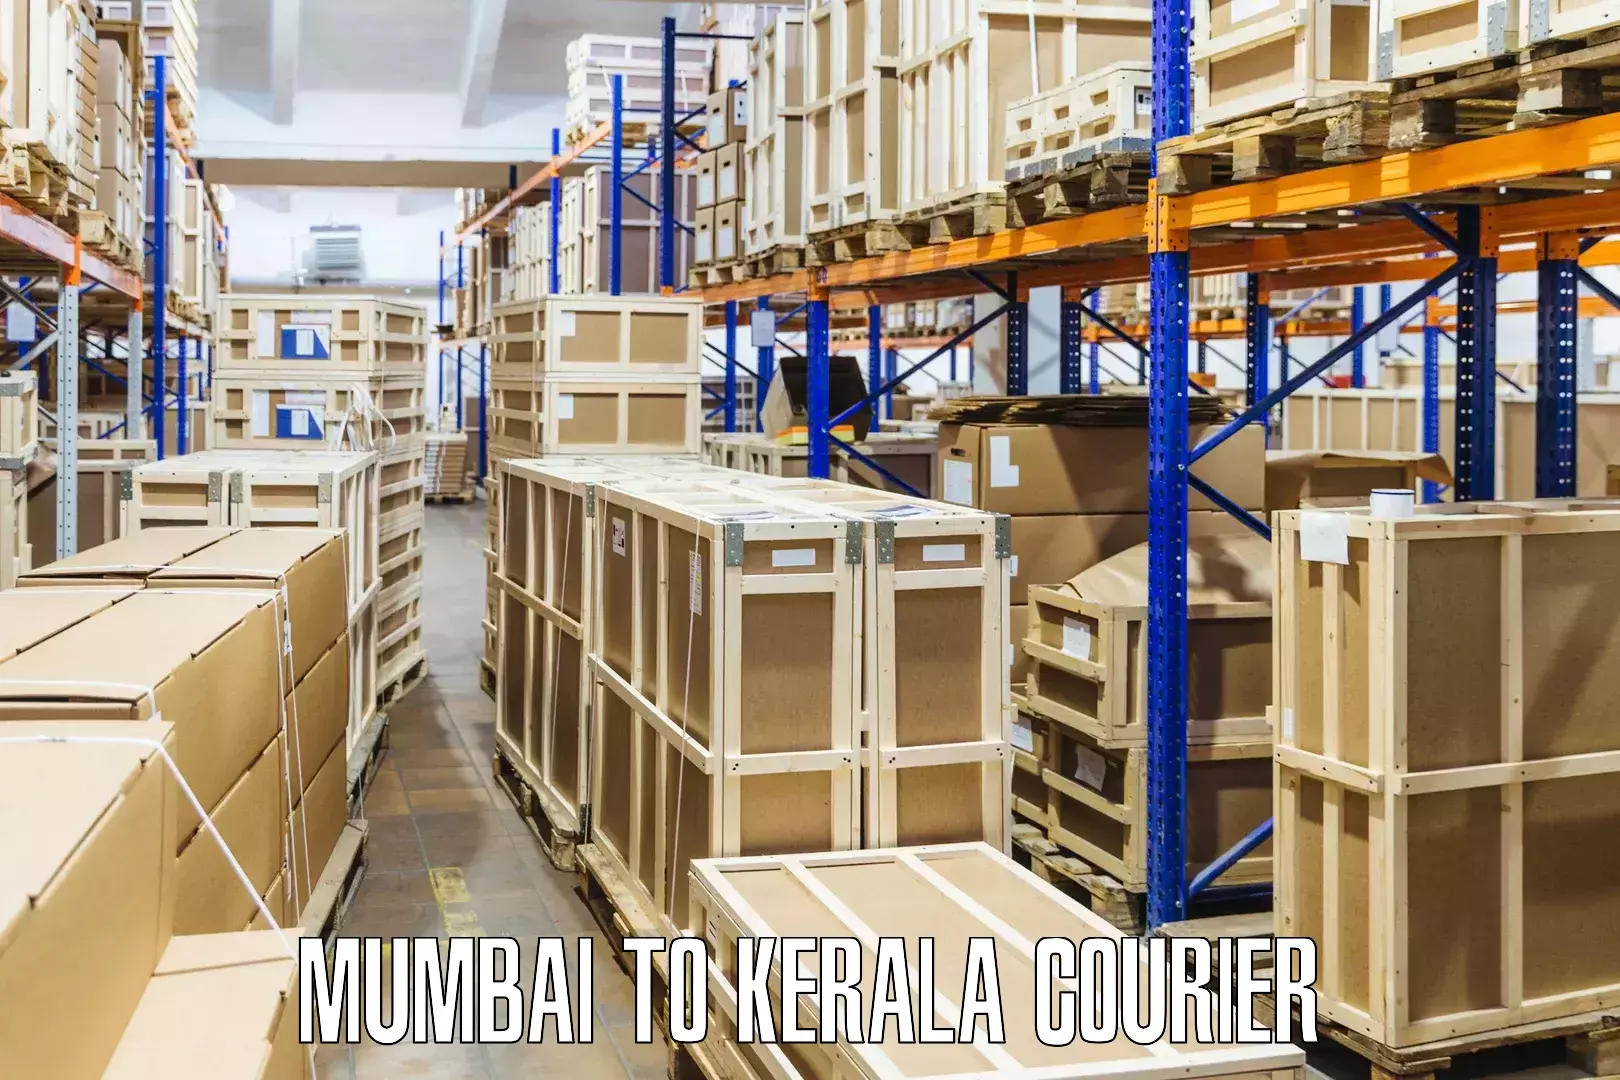 High-speed parcel service Mumbai to Manjeshwar